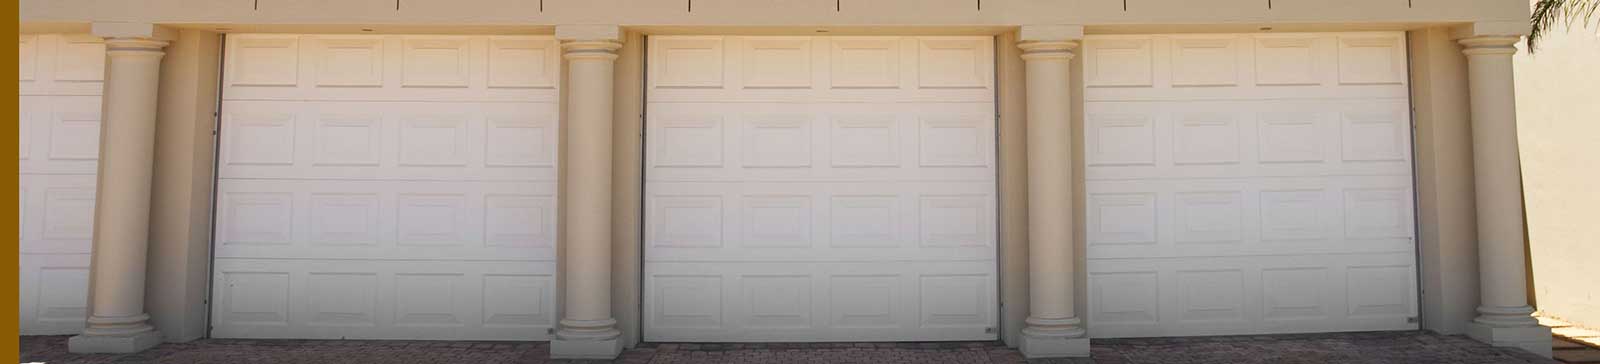 Garage Door Repair Expert Service - Davis CA